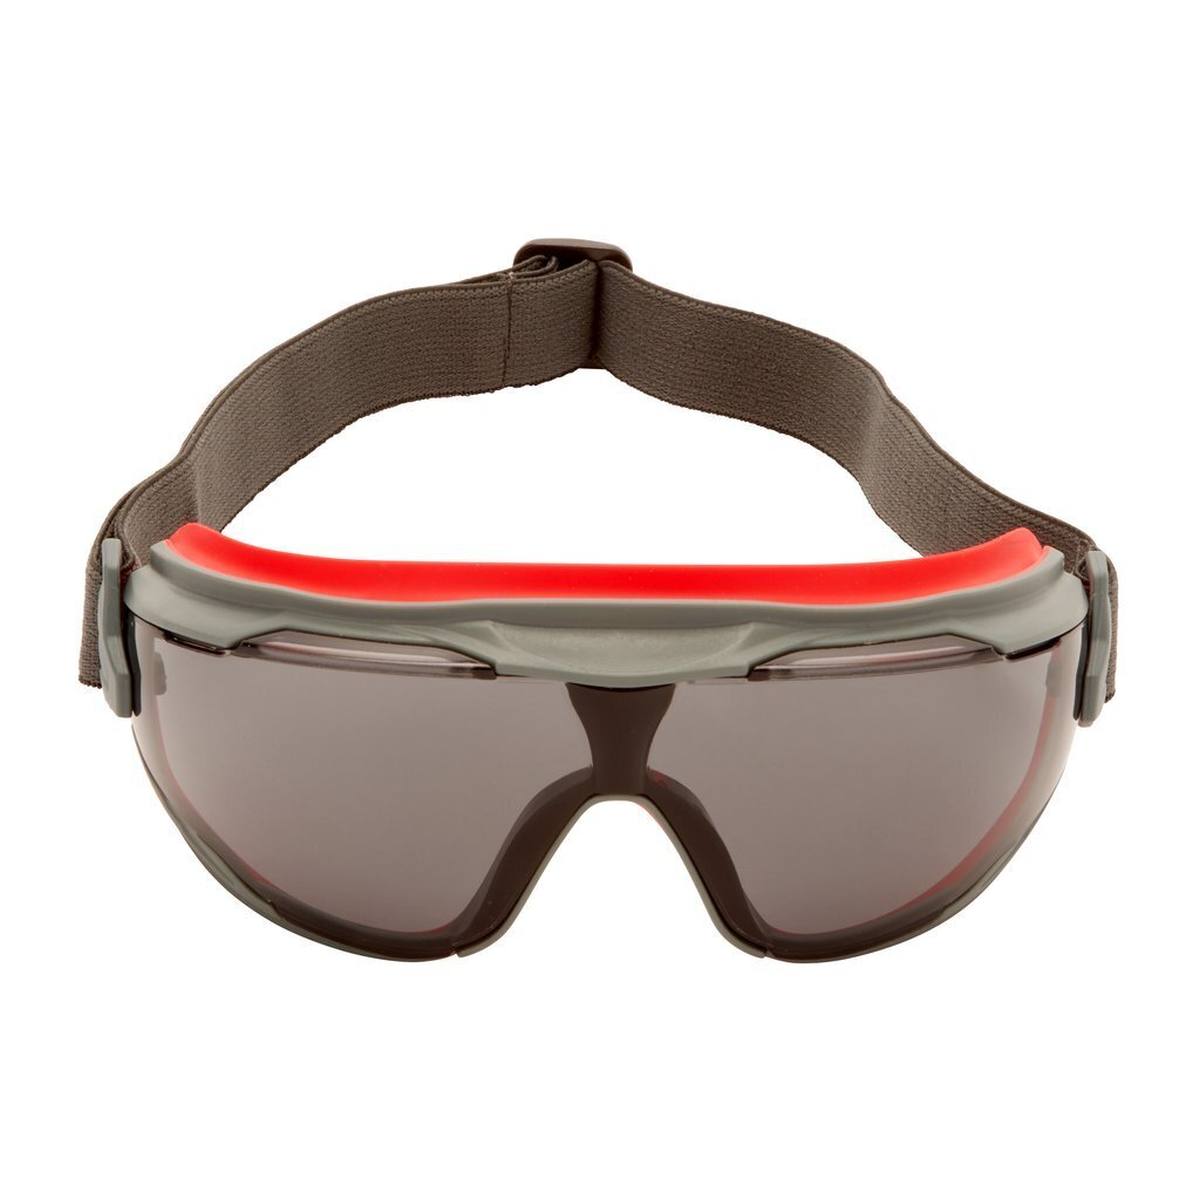 3M Gafas de visión total GoggleGear 500 GG502SGAF-EU, montura gris rojiza, lentes grises, cinta de neopreno negra para la cabeza